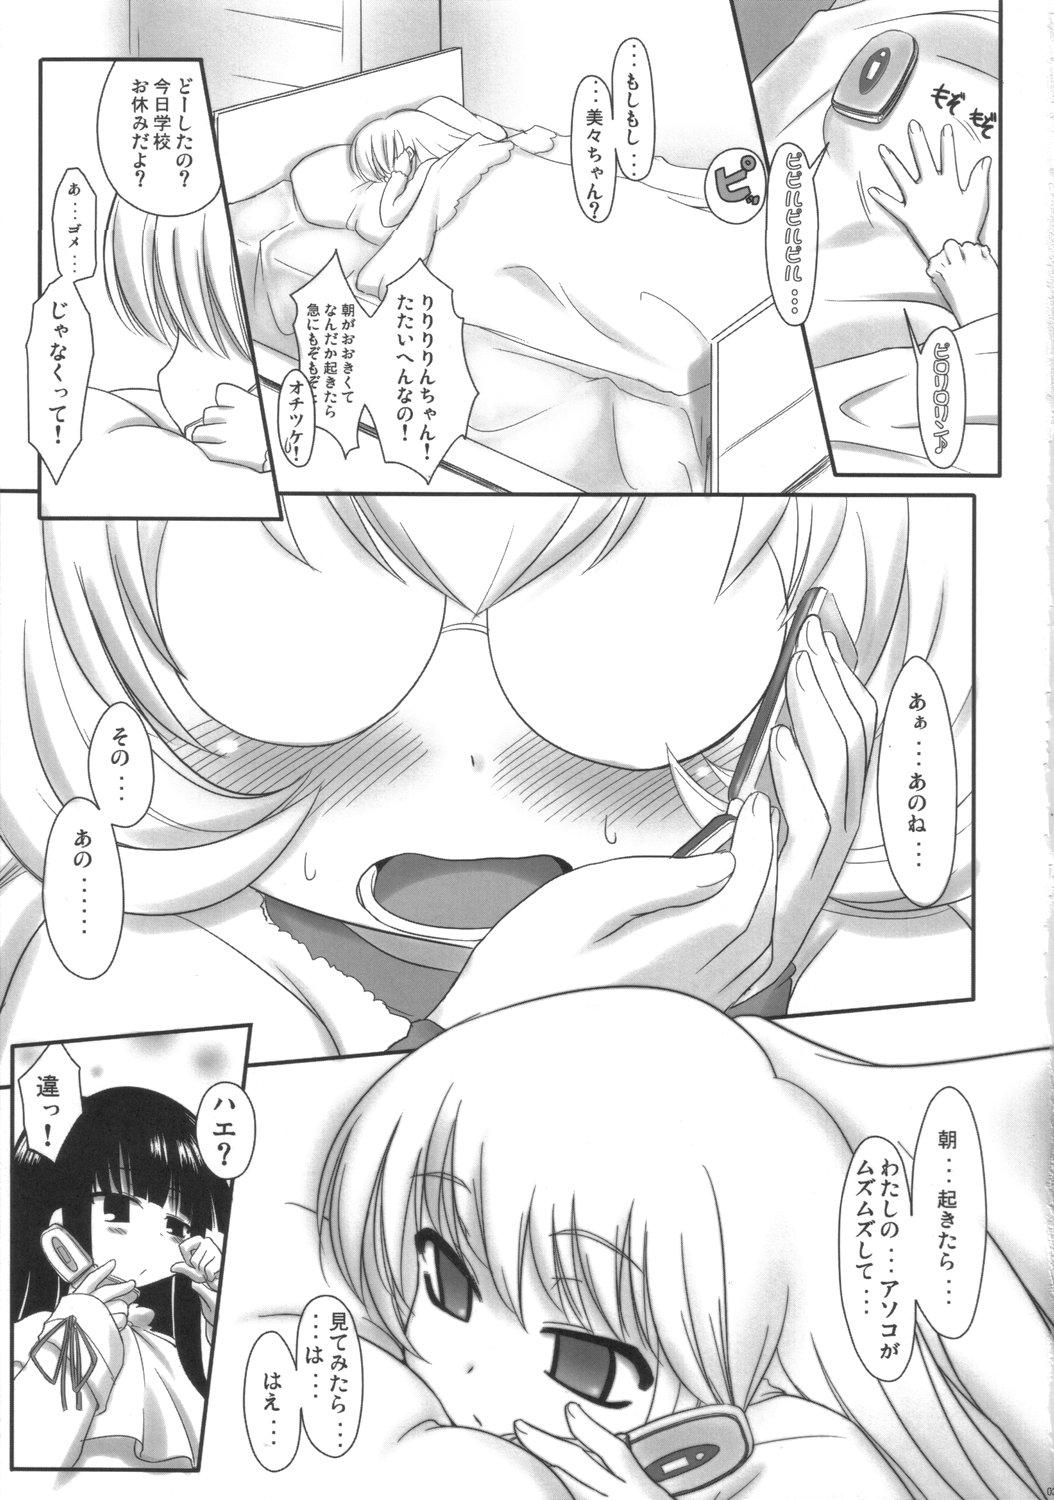 Bunda Grande Kodomo no Jikuma! - Kodomo no jikan Girl On Girl - Page 2